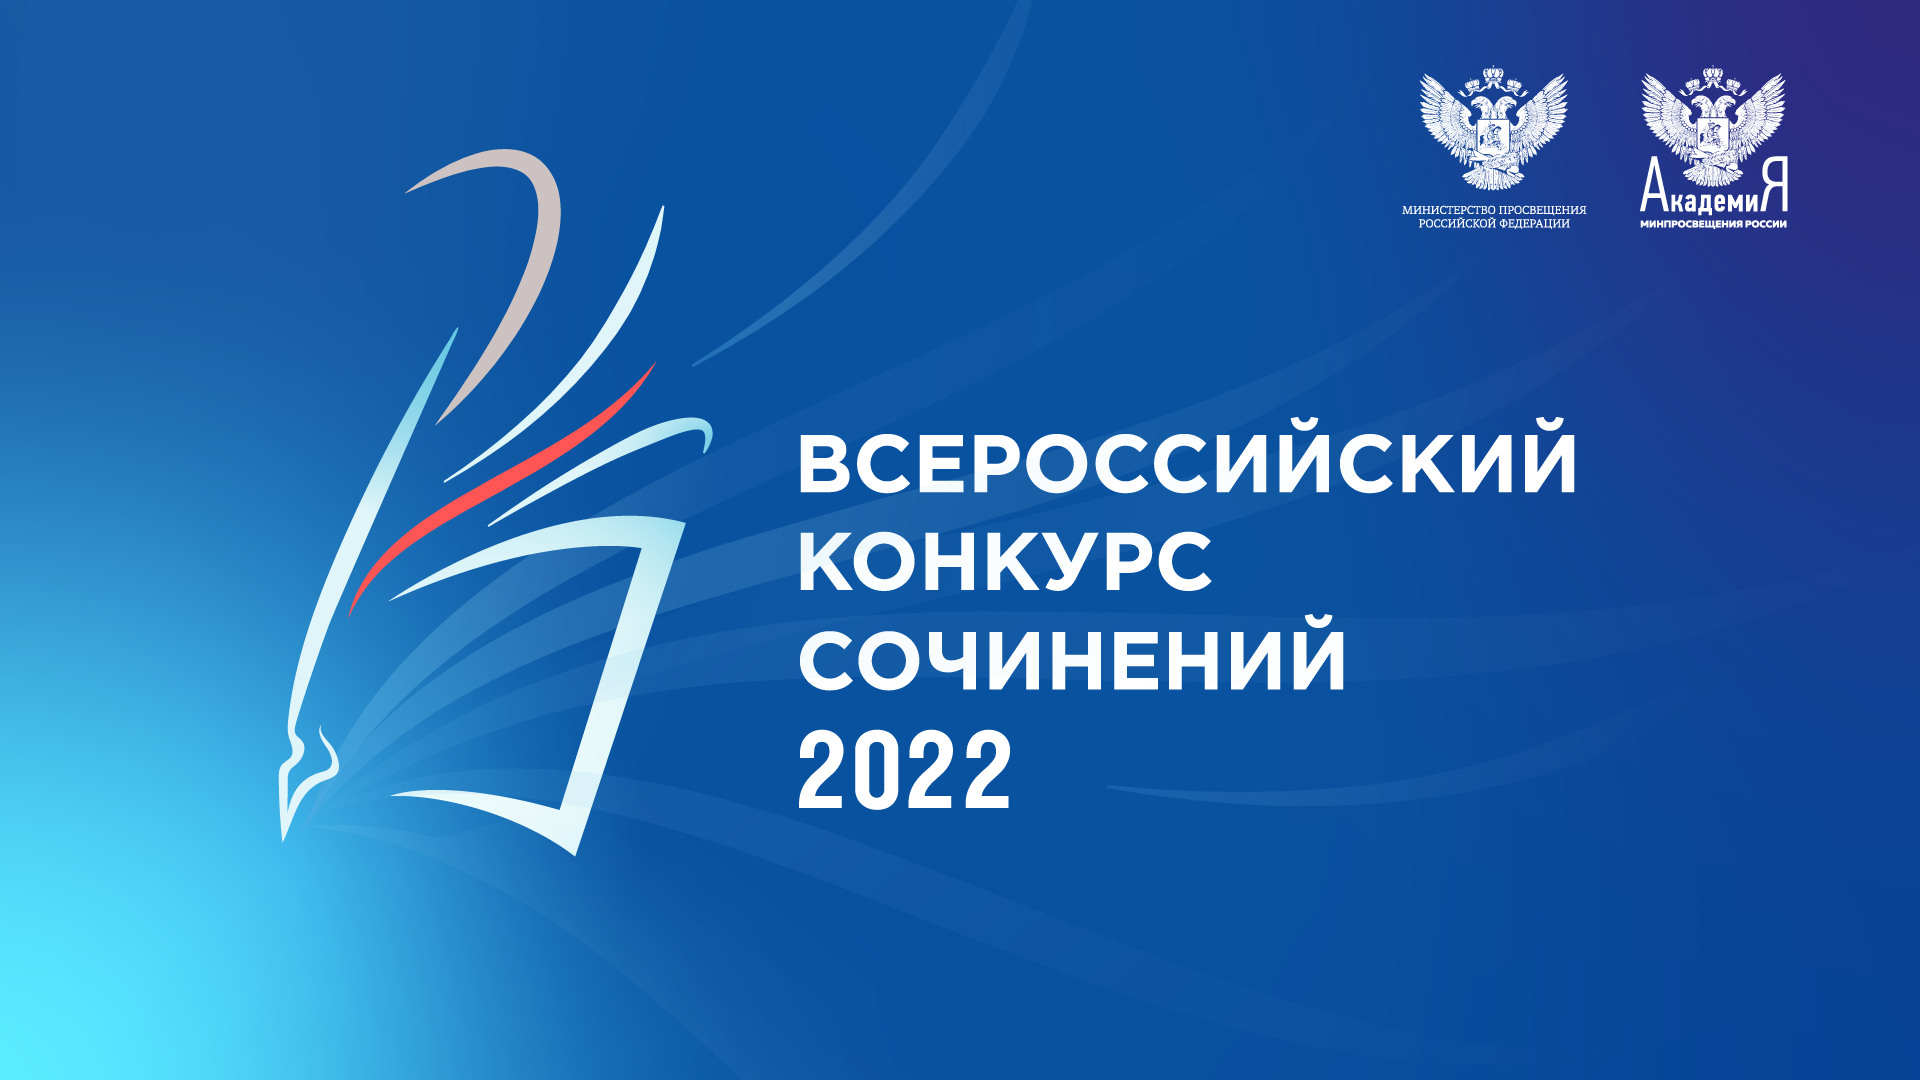 Подведены итоги Всероссийского конкурса сочинений 2022 года